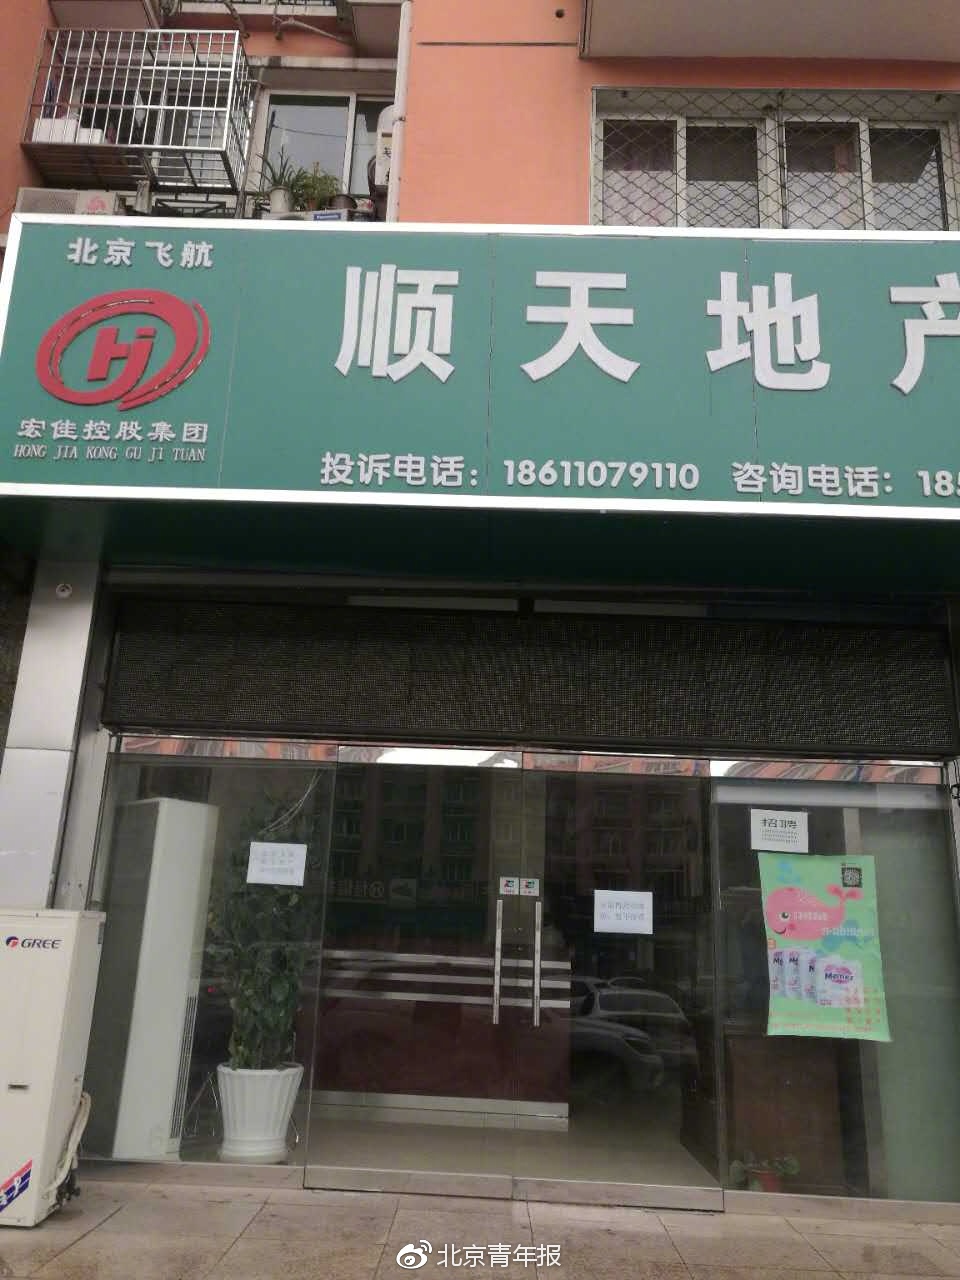 北京一周38家违规中介门店被罚 91家自行停业